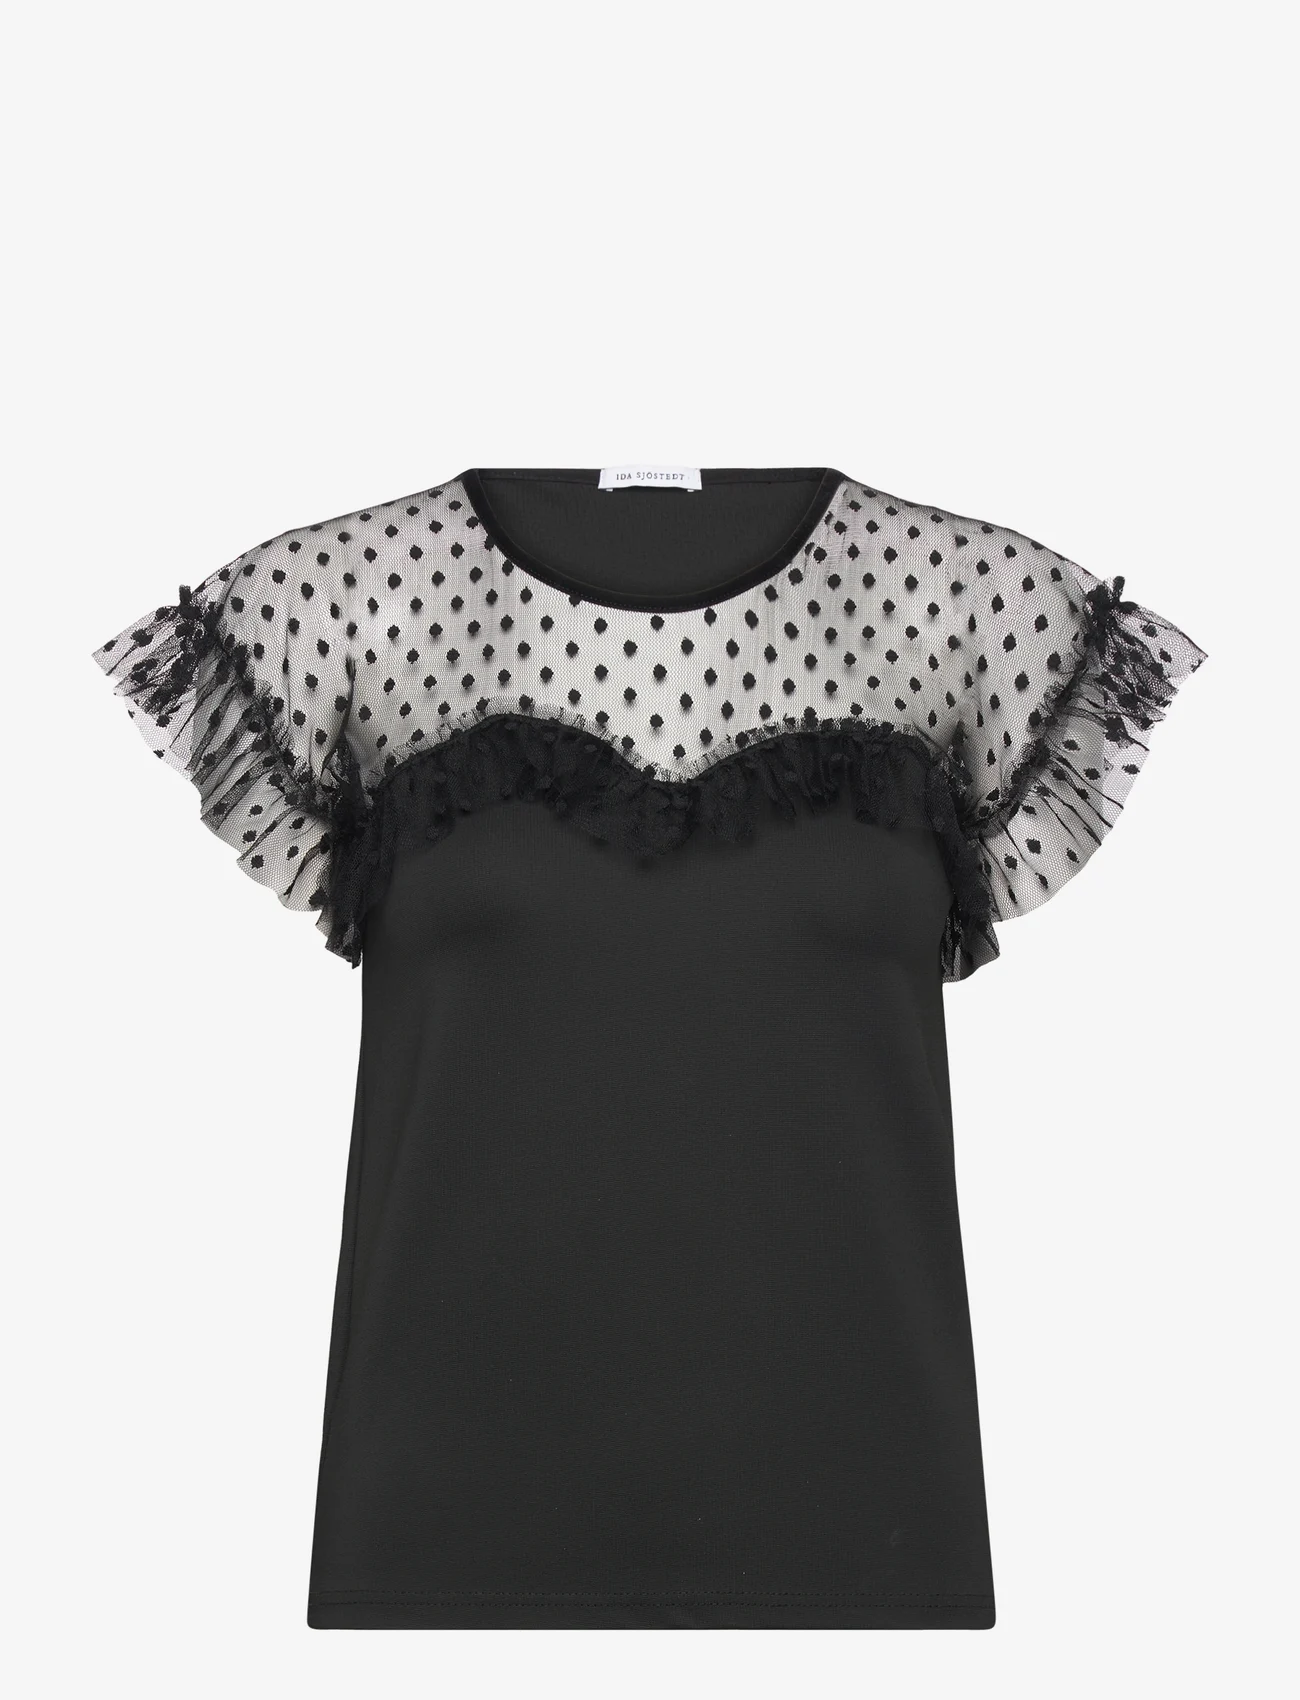 Ida Sjöstedt - ISLA TOP - blouses met korte mouwen - black dot - 1